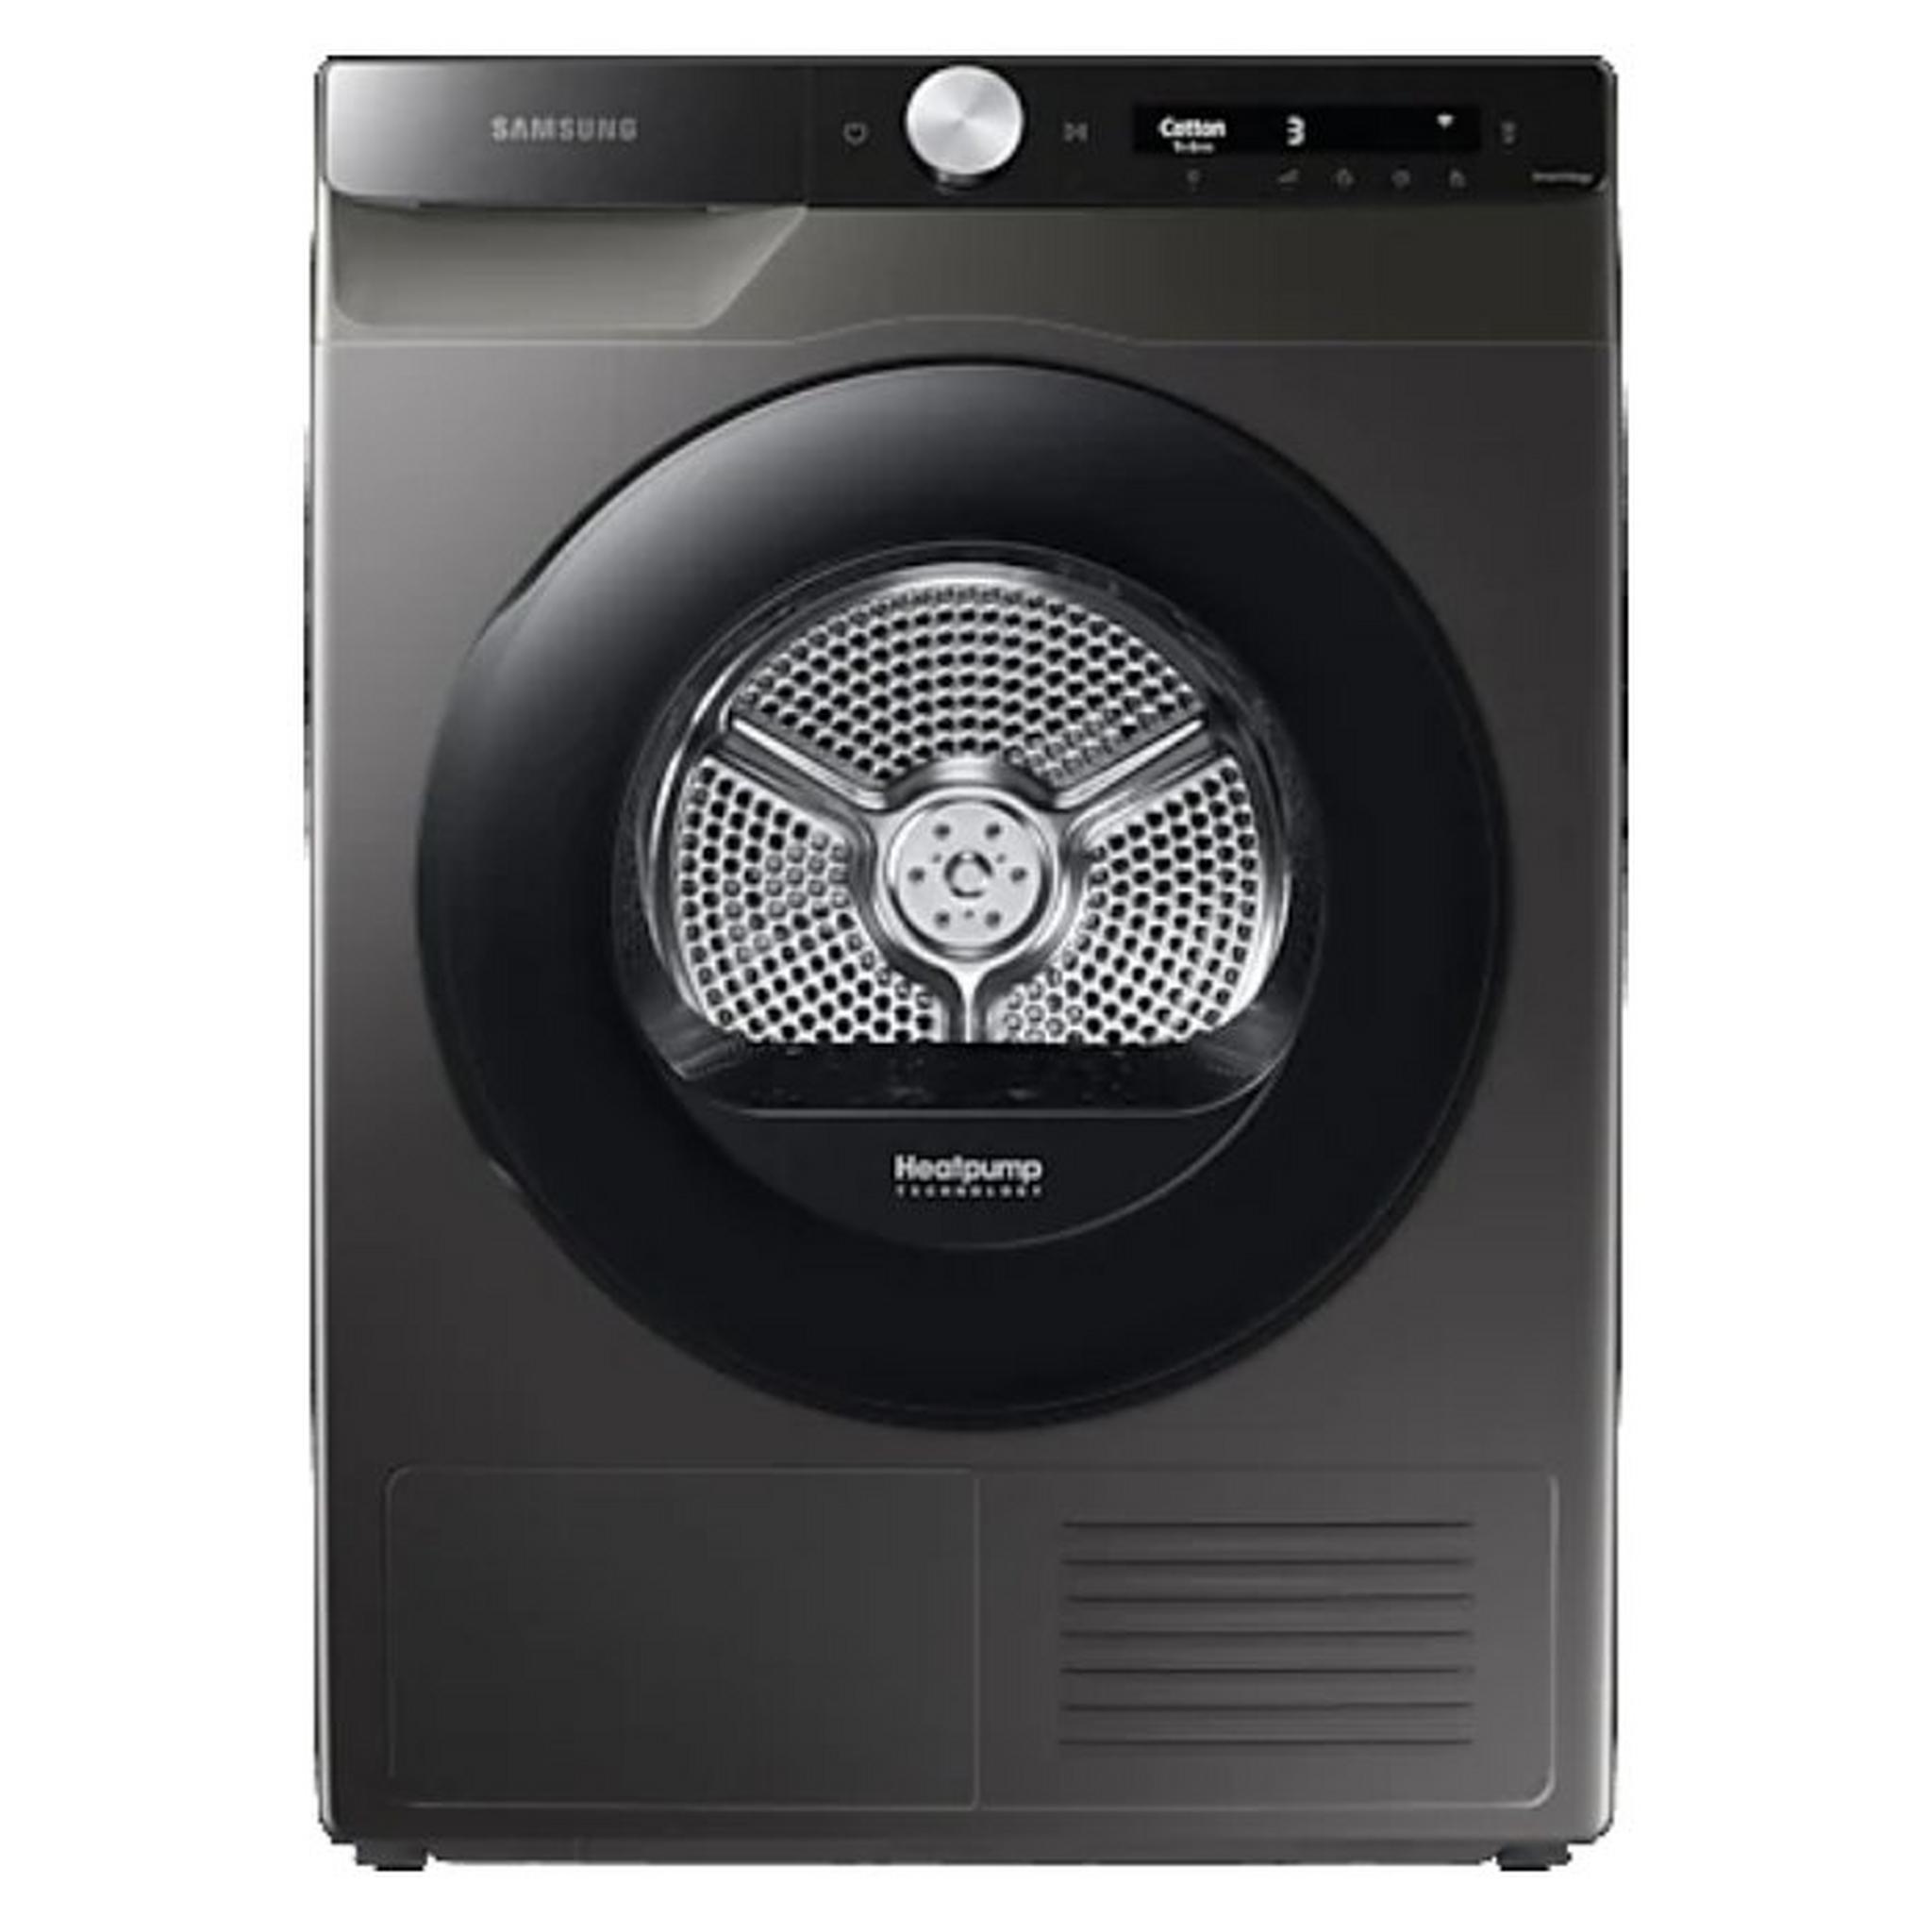 Samsung Condenser Dryer with Heat Pump, 8kg, DV80T5220AX - Silver